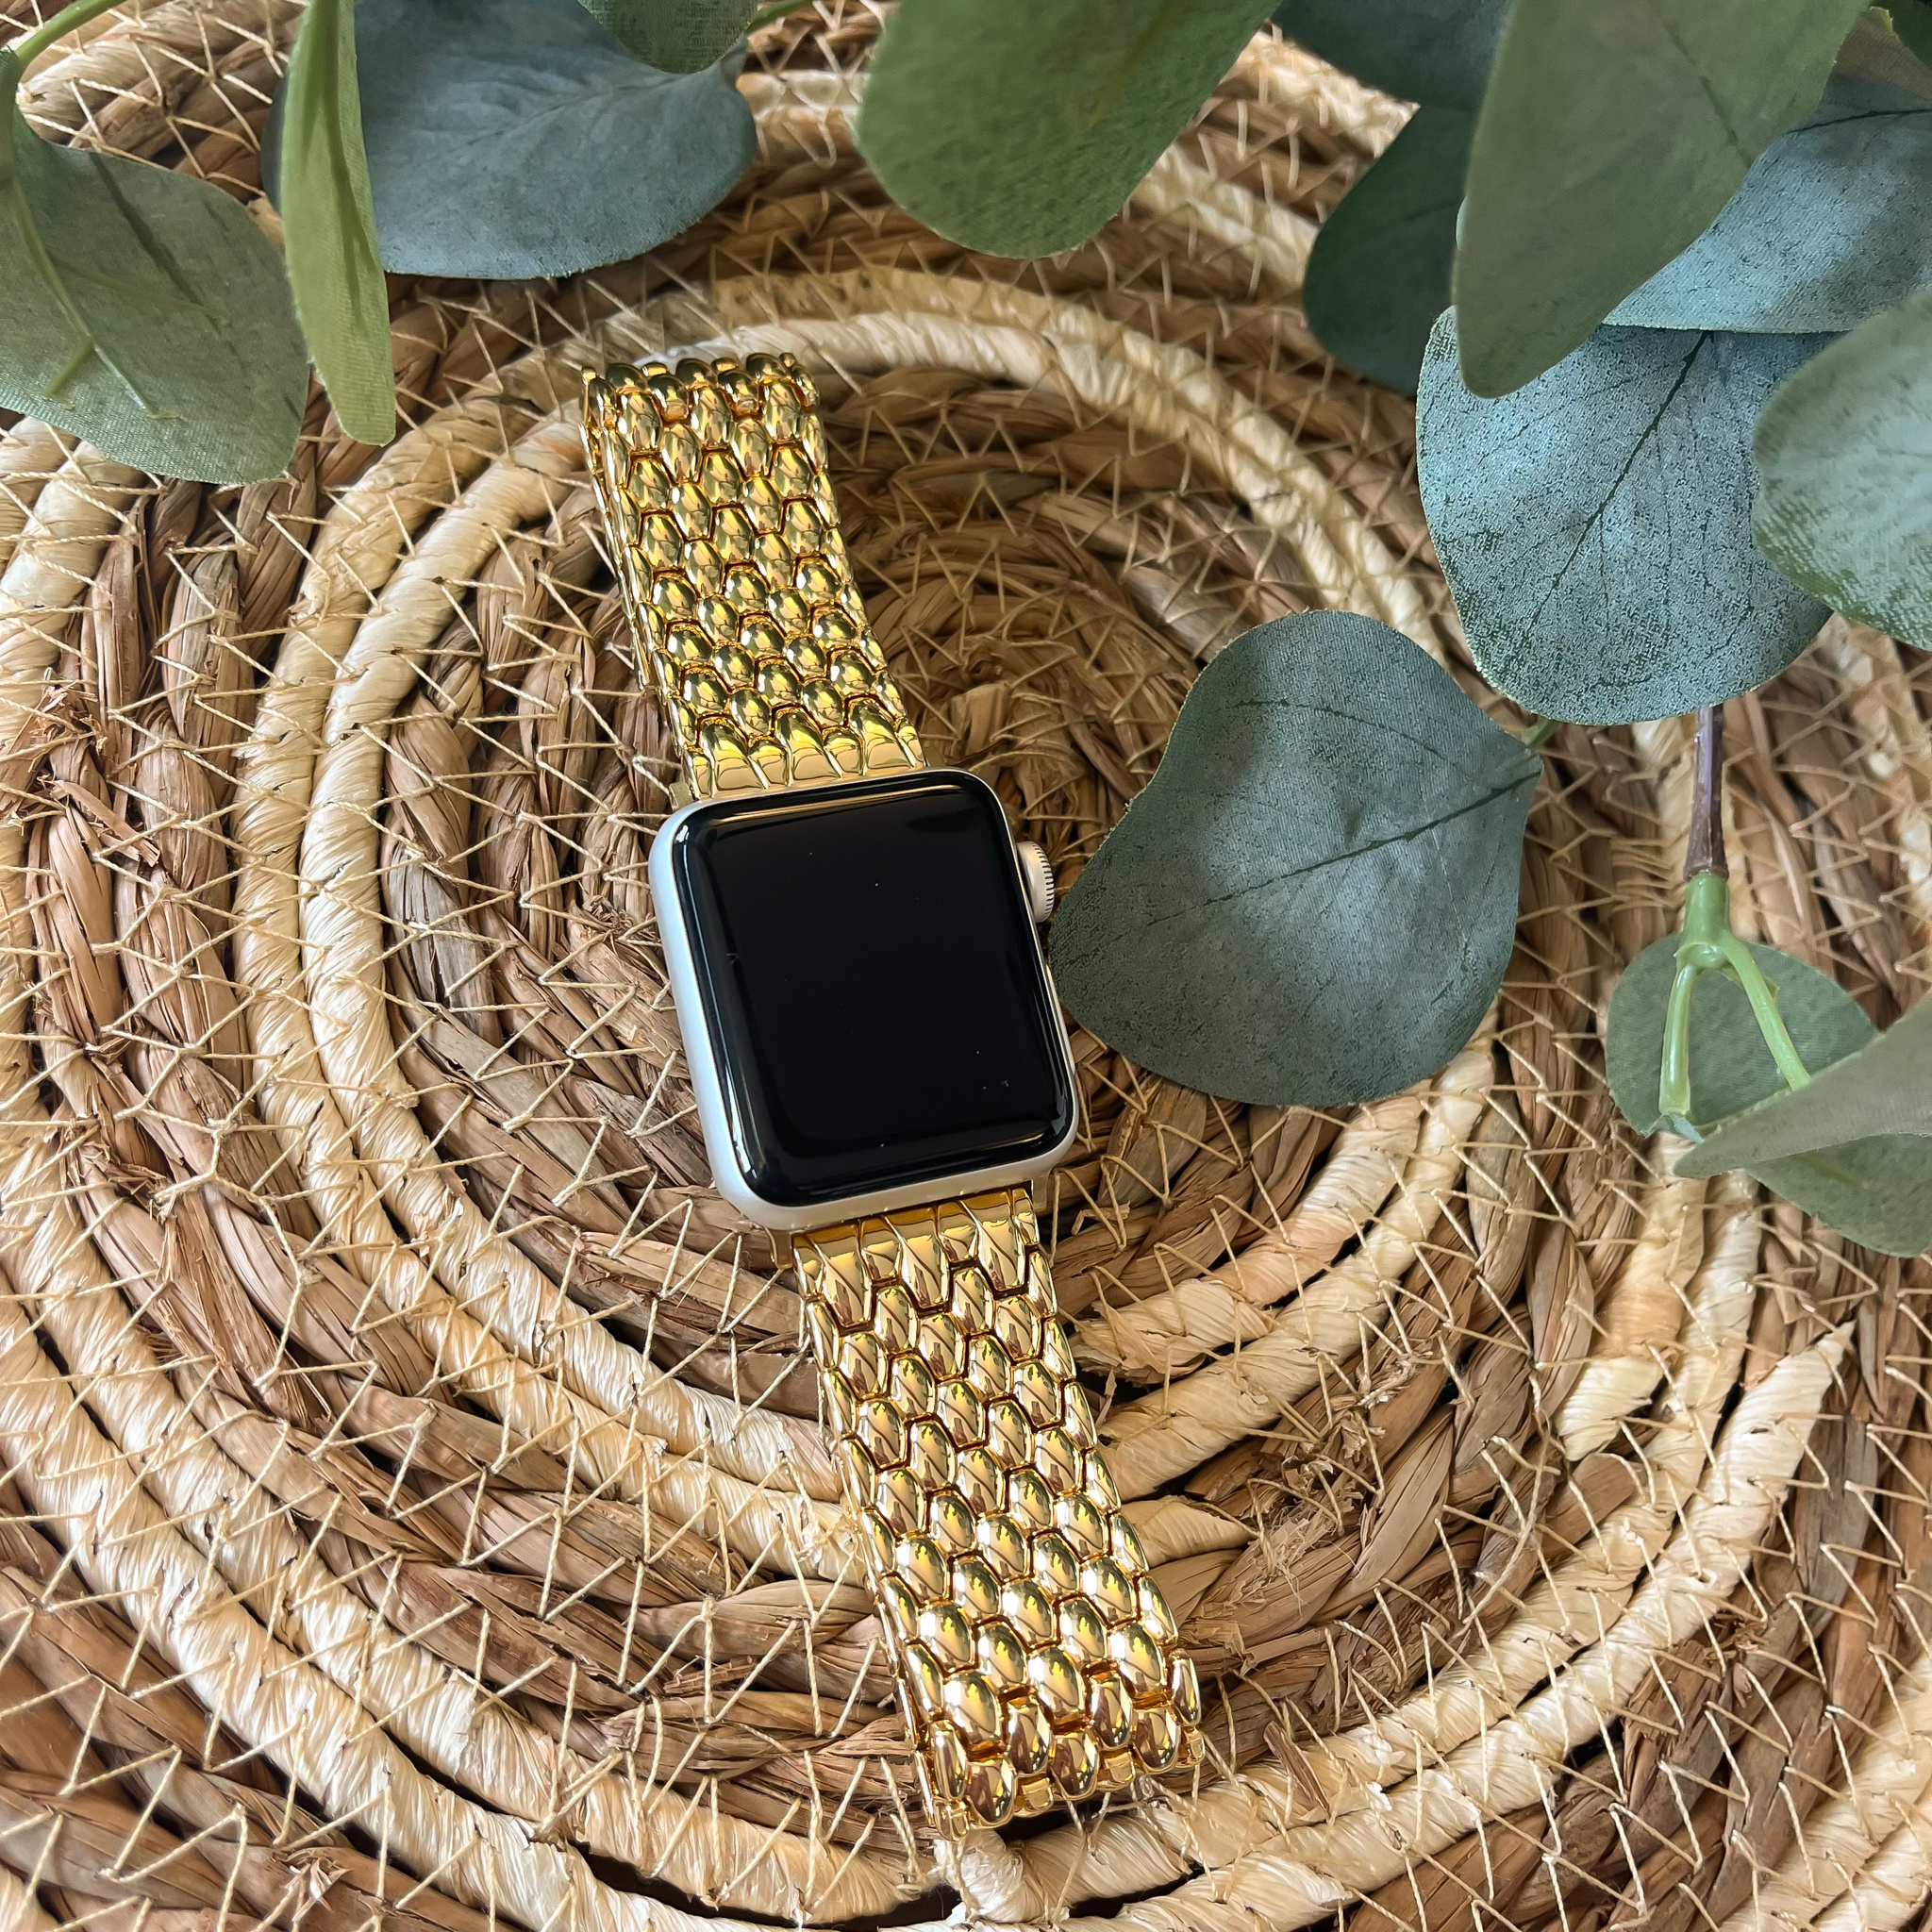 Correa de eslabones de acero dragón para el Apple Watch - oro